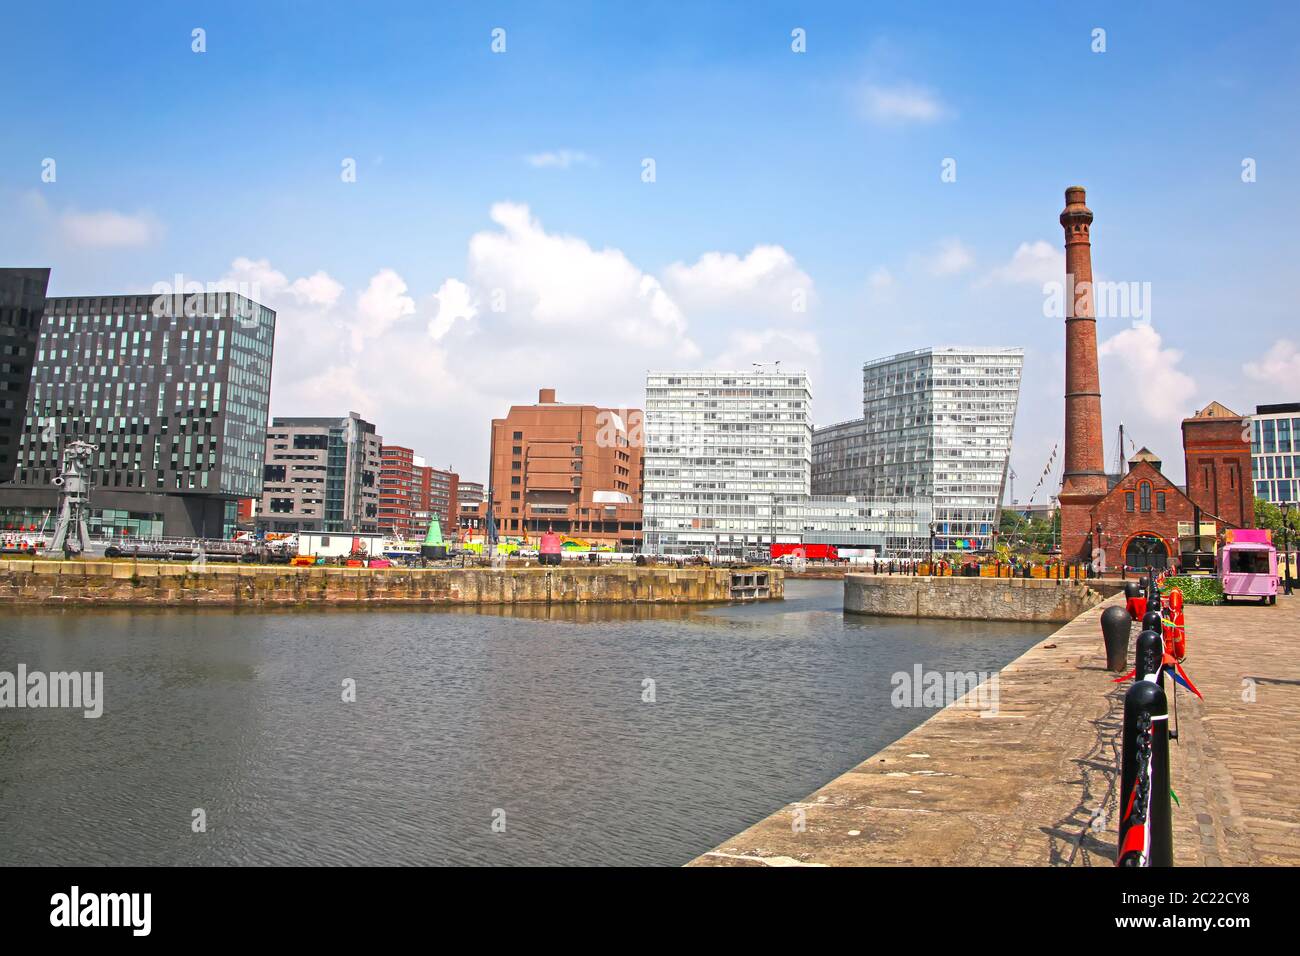 Vue sur la ville de Canning Dock historique sur la rivière Mersey, qui fait partie du port de Liverpool, dans le nord de l'Angleterre, au Royaume-Uni. Banque D'Images